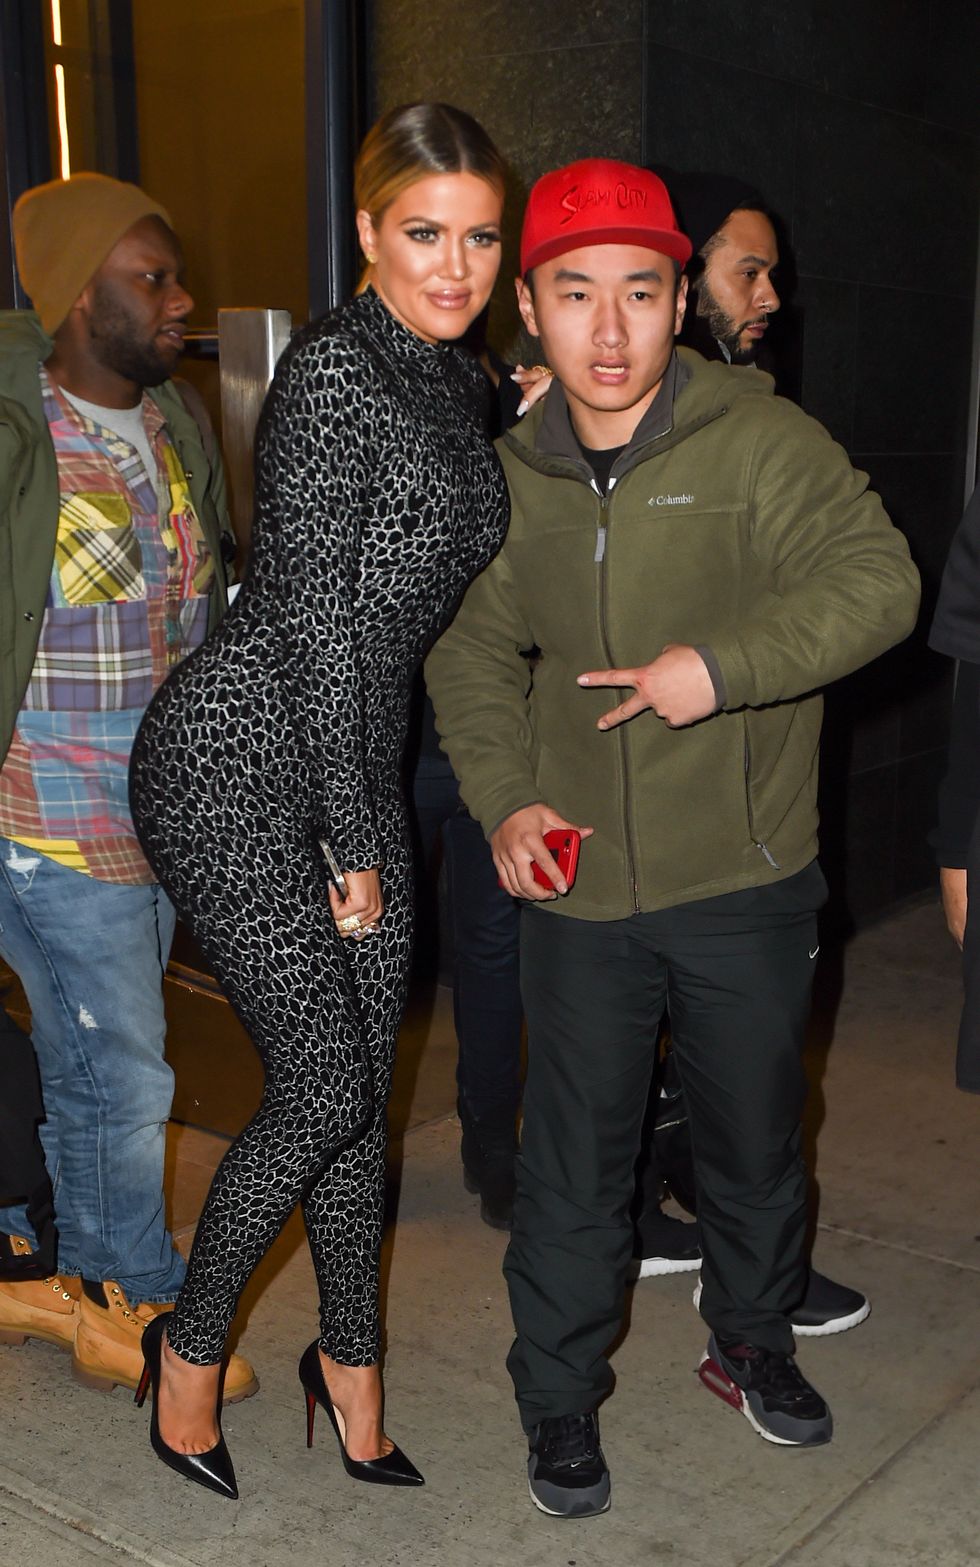 Khloe Kardashian meeting fans in a leopard catsuit